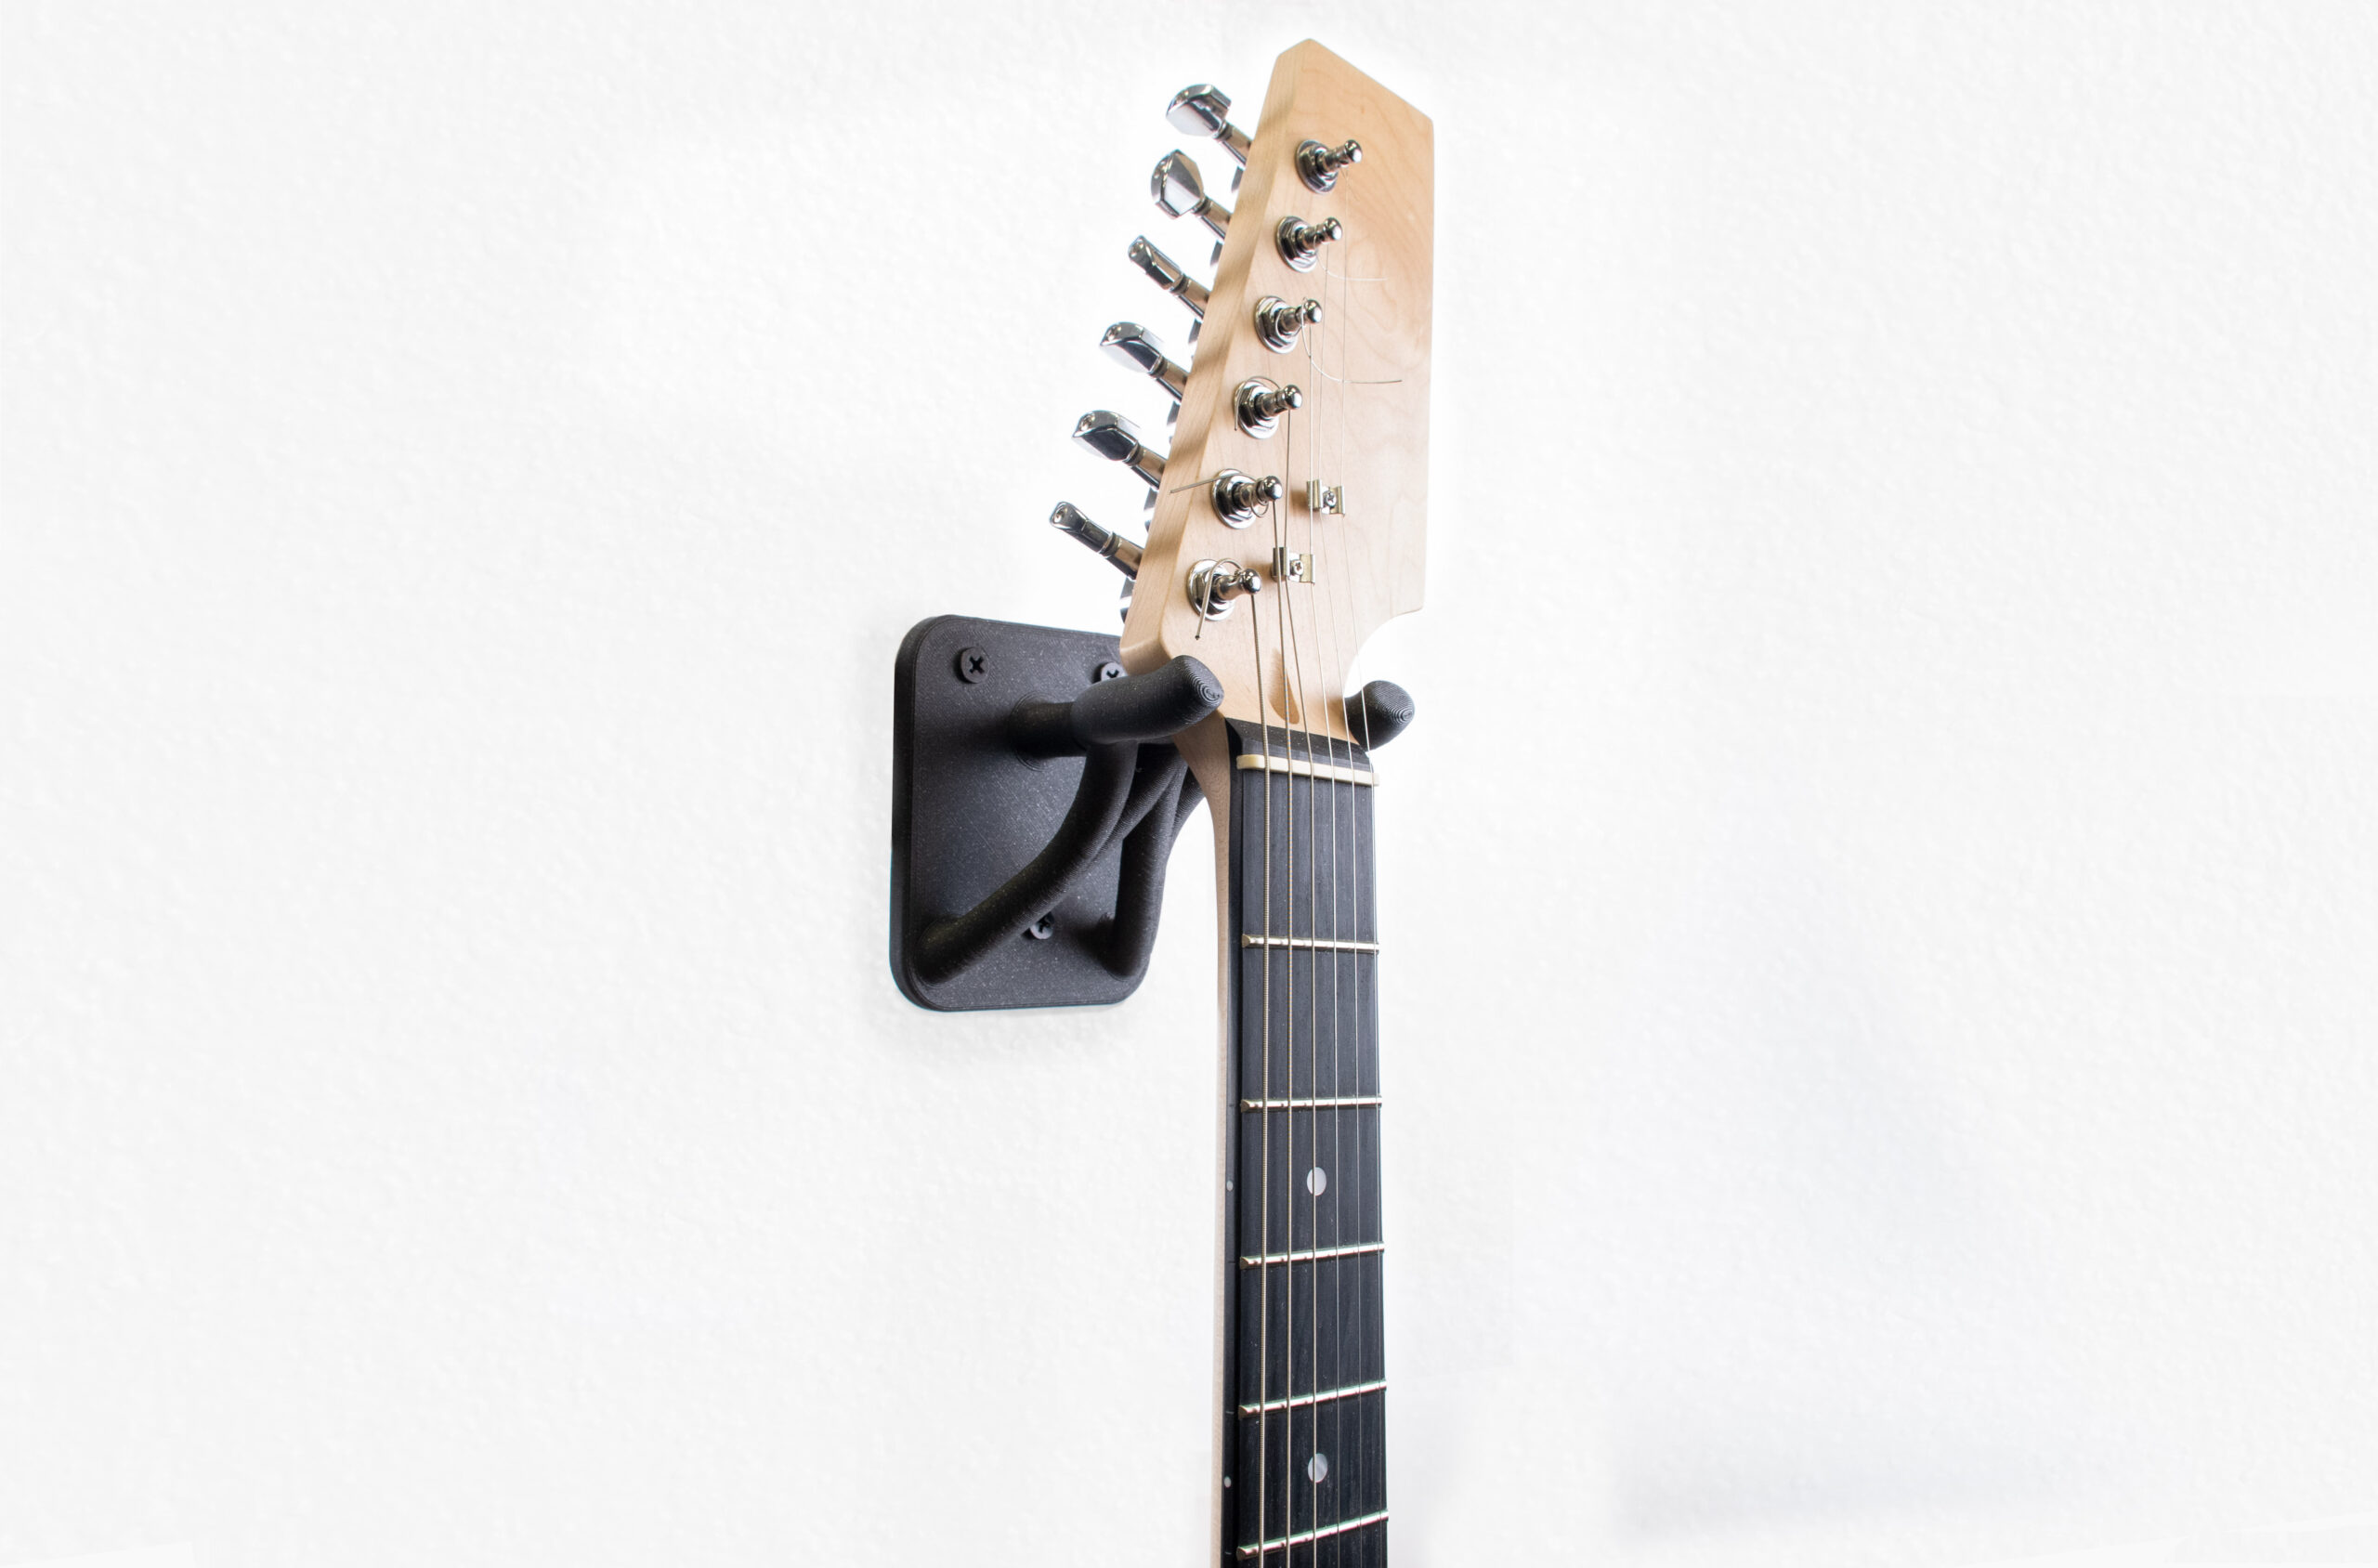 Accessoires de guitare imprimés en 3D - Original Prusa 3D Printers